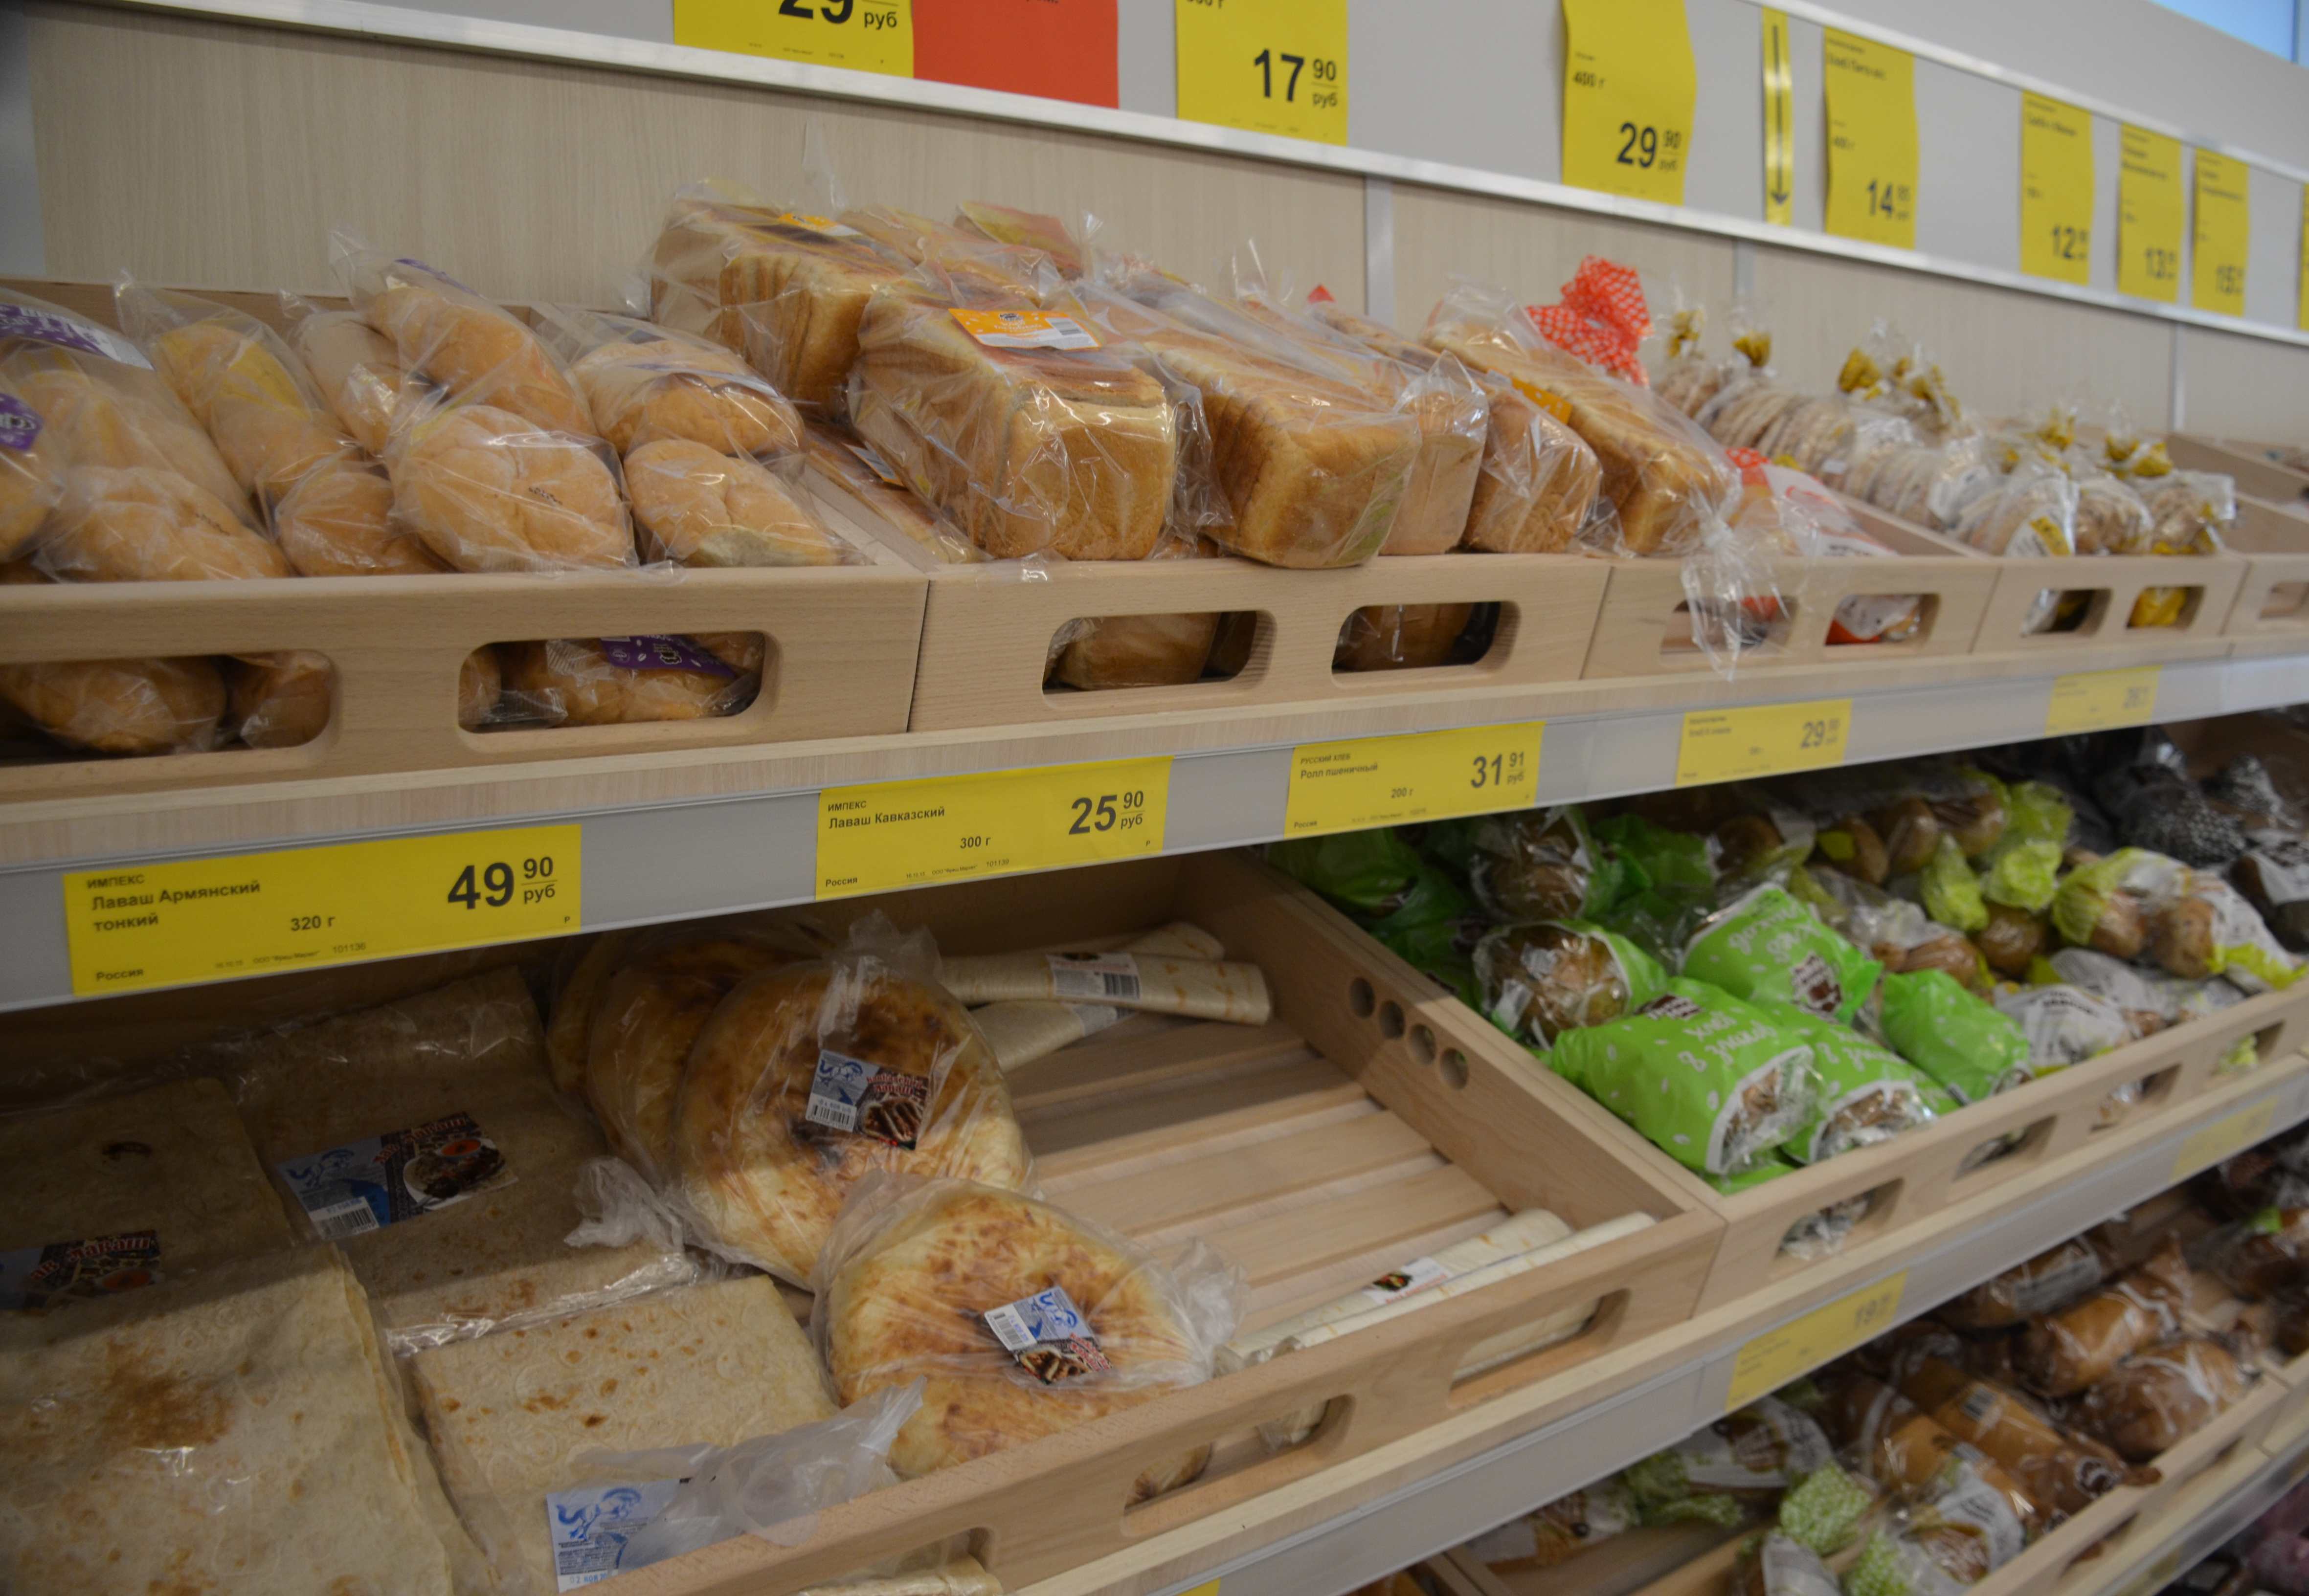 Роспотребнадзор конфисковал 30 кг хлеба из рязанских магазинов